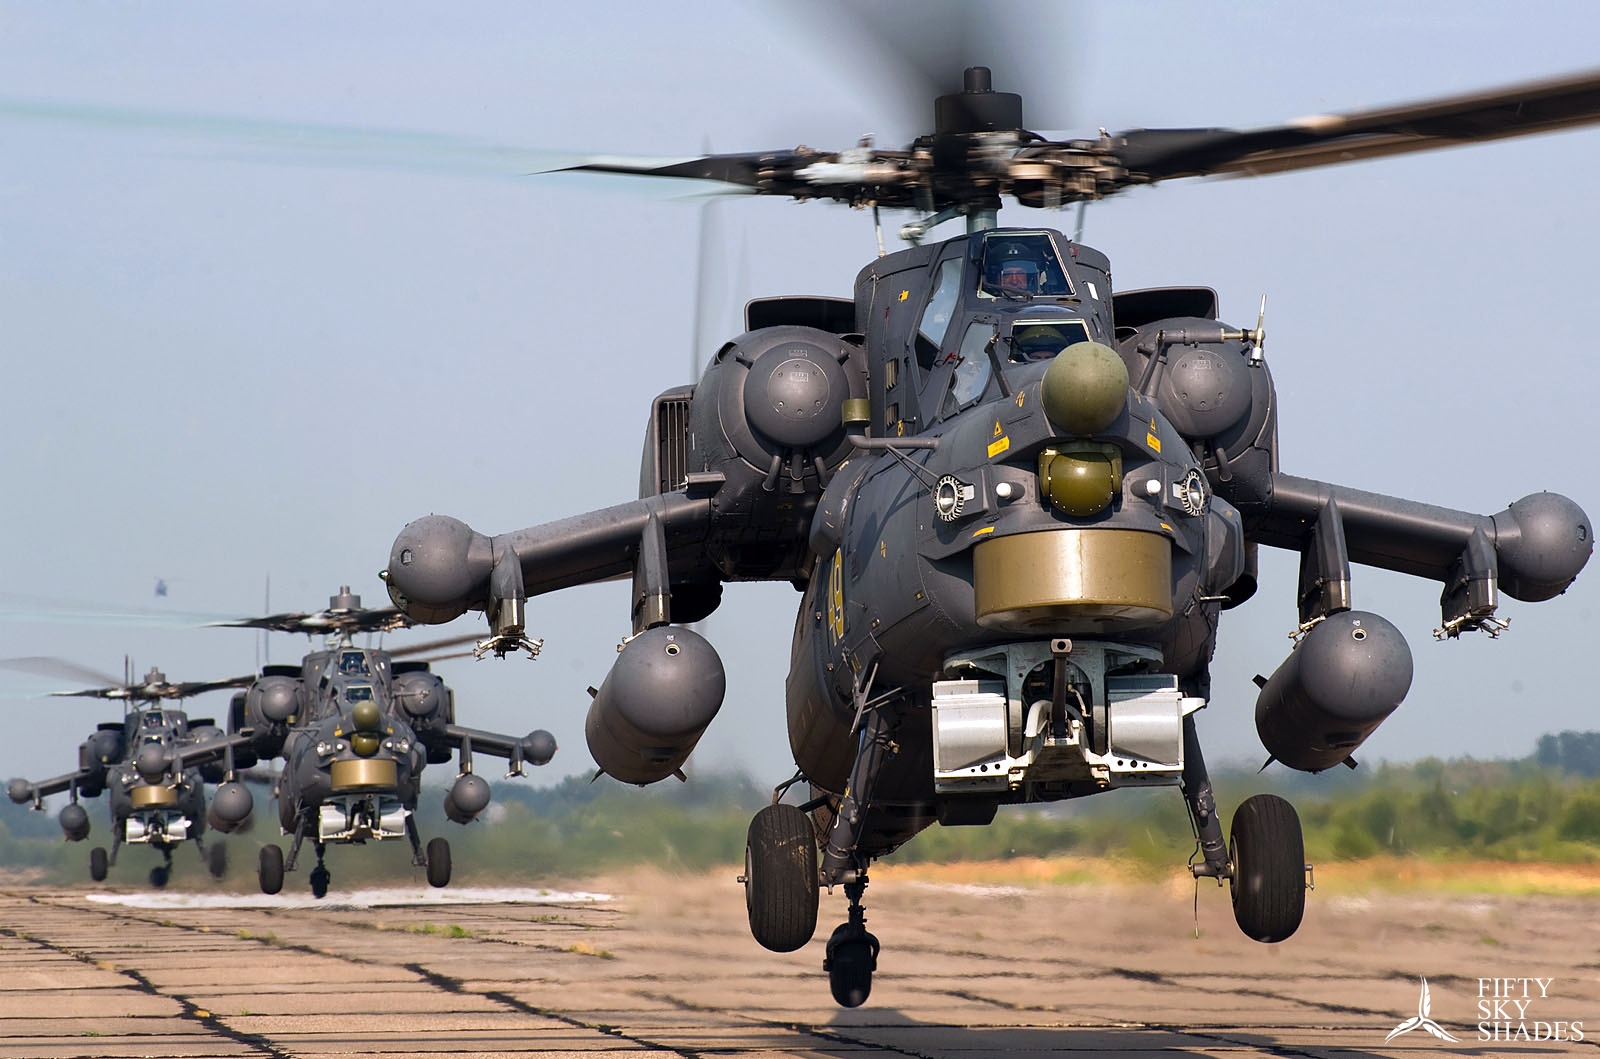 Trực thăng tấn công Mi-35M là dòng máy bay trực thăng chiến đấu đa năng do Rostvertol, một chi nhánh của Công ty Trực thăng Nga, chế tạo. Mi-35M  có khả năng sử dụng vũ khí có điều khiển và không điều khiển trong mọi điều kiện thời tiết, có thể hoạt động tấn công ở độ cao 10-25m ban ngày và 50m ở ban đêm trên đất liền hoặc trên sông, biển.